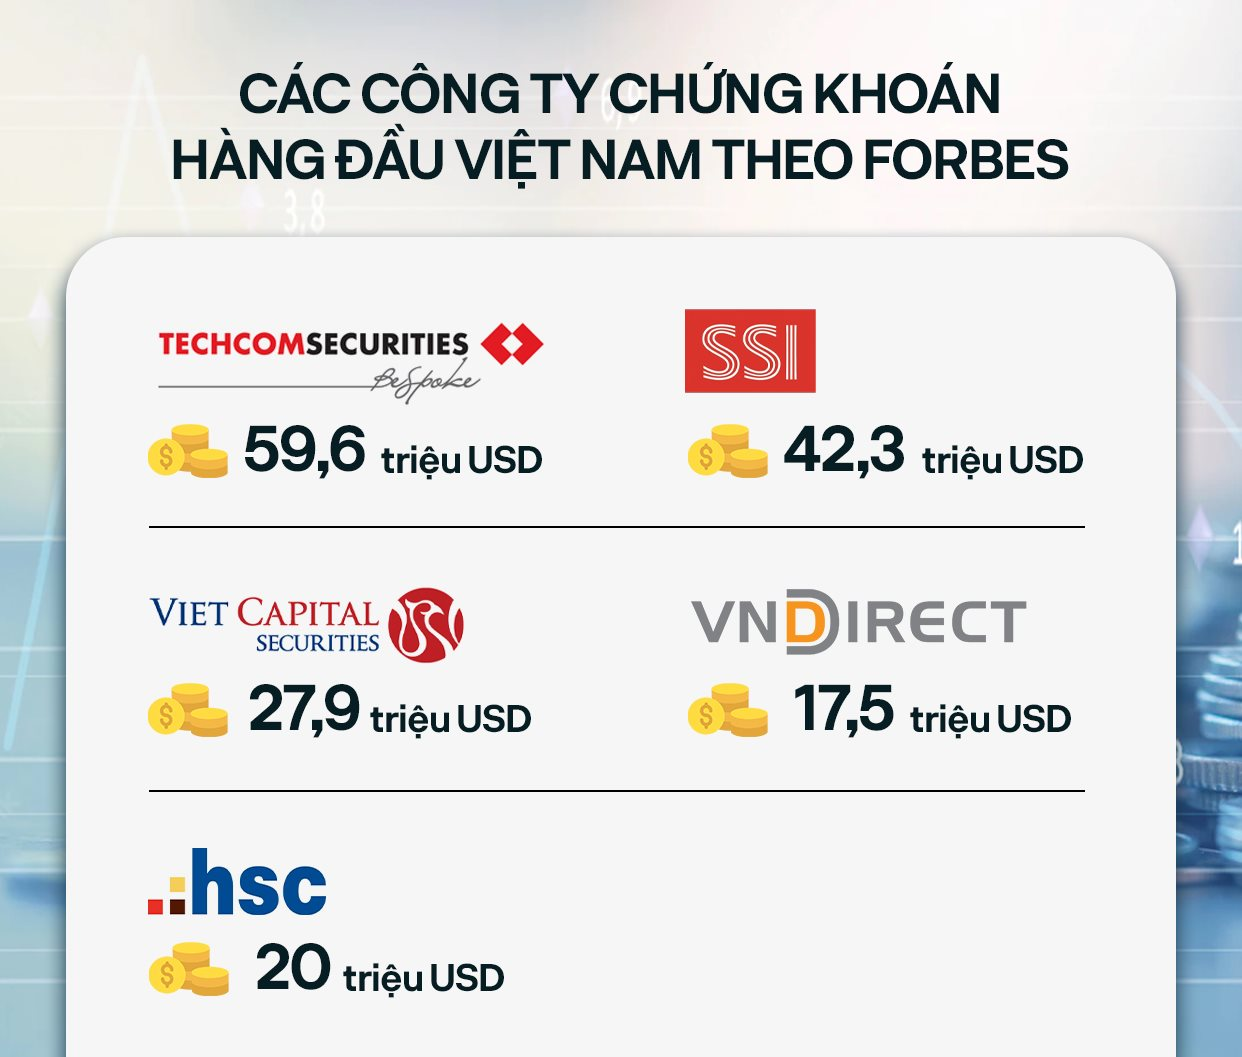 Forbes công bố thương hiệu tài chính hàng đầu Việt Nam: Vietcombank dẫn đầu, Techcombank và VPBank không kém cạnh - Ảnh 3.